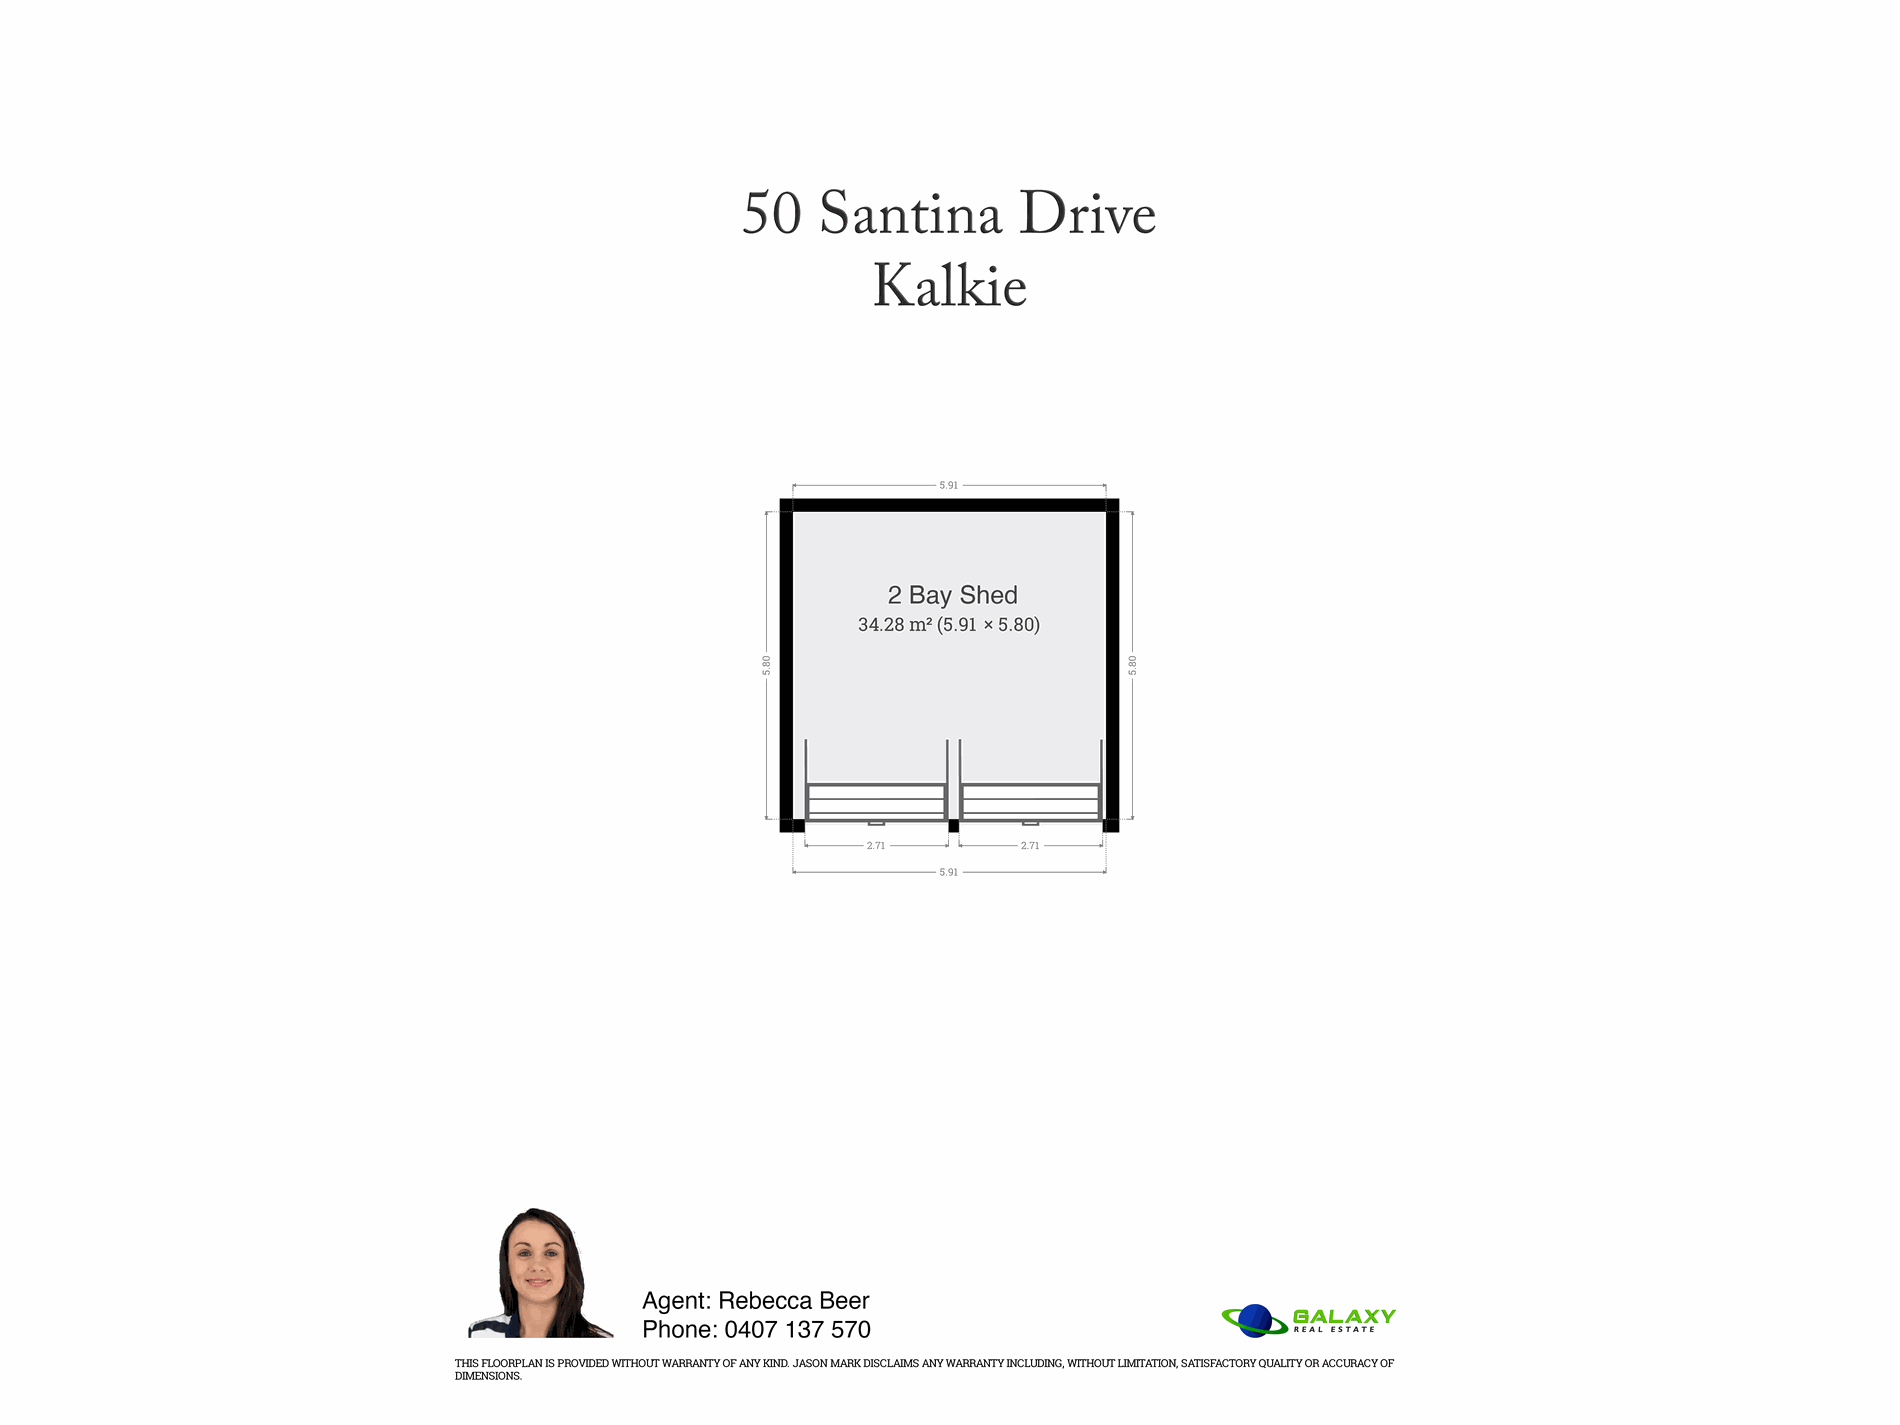 50 Santina Drive, Kalkie